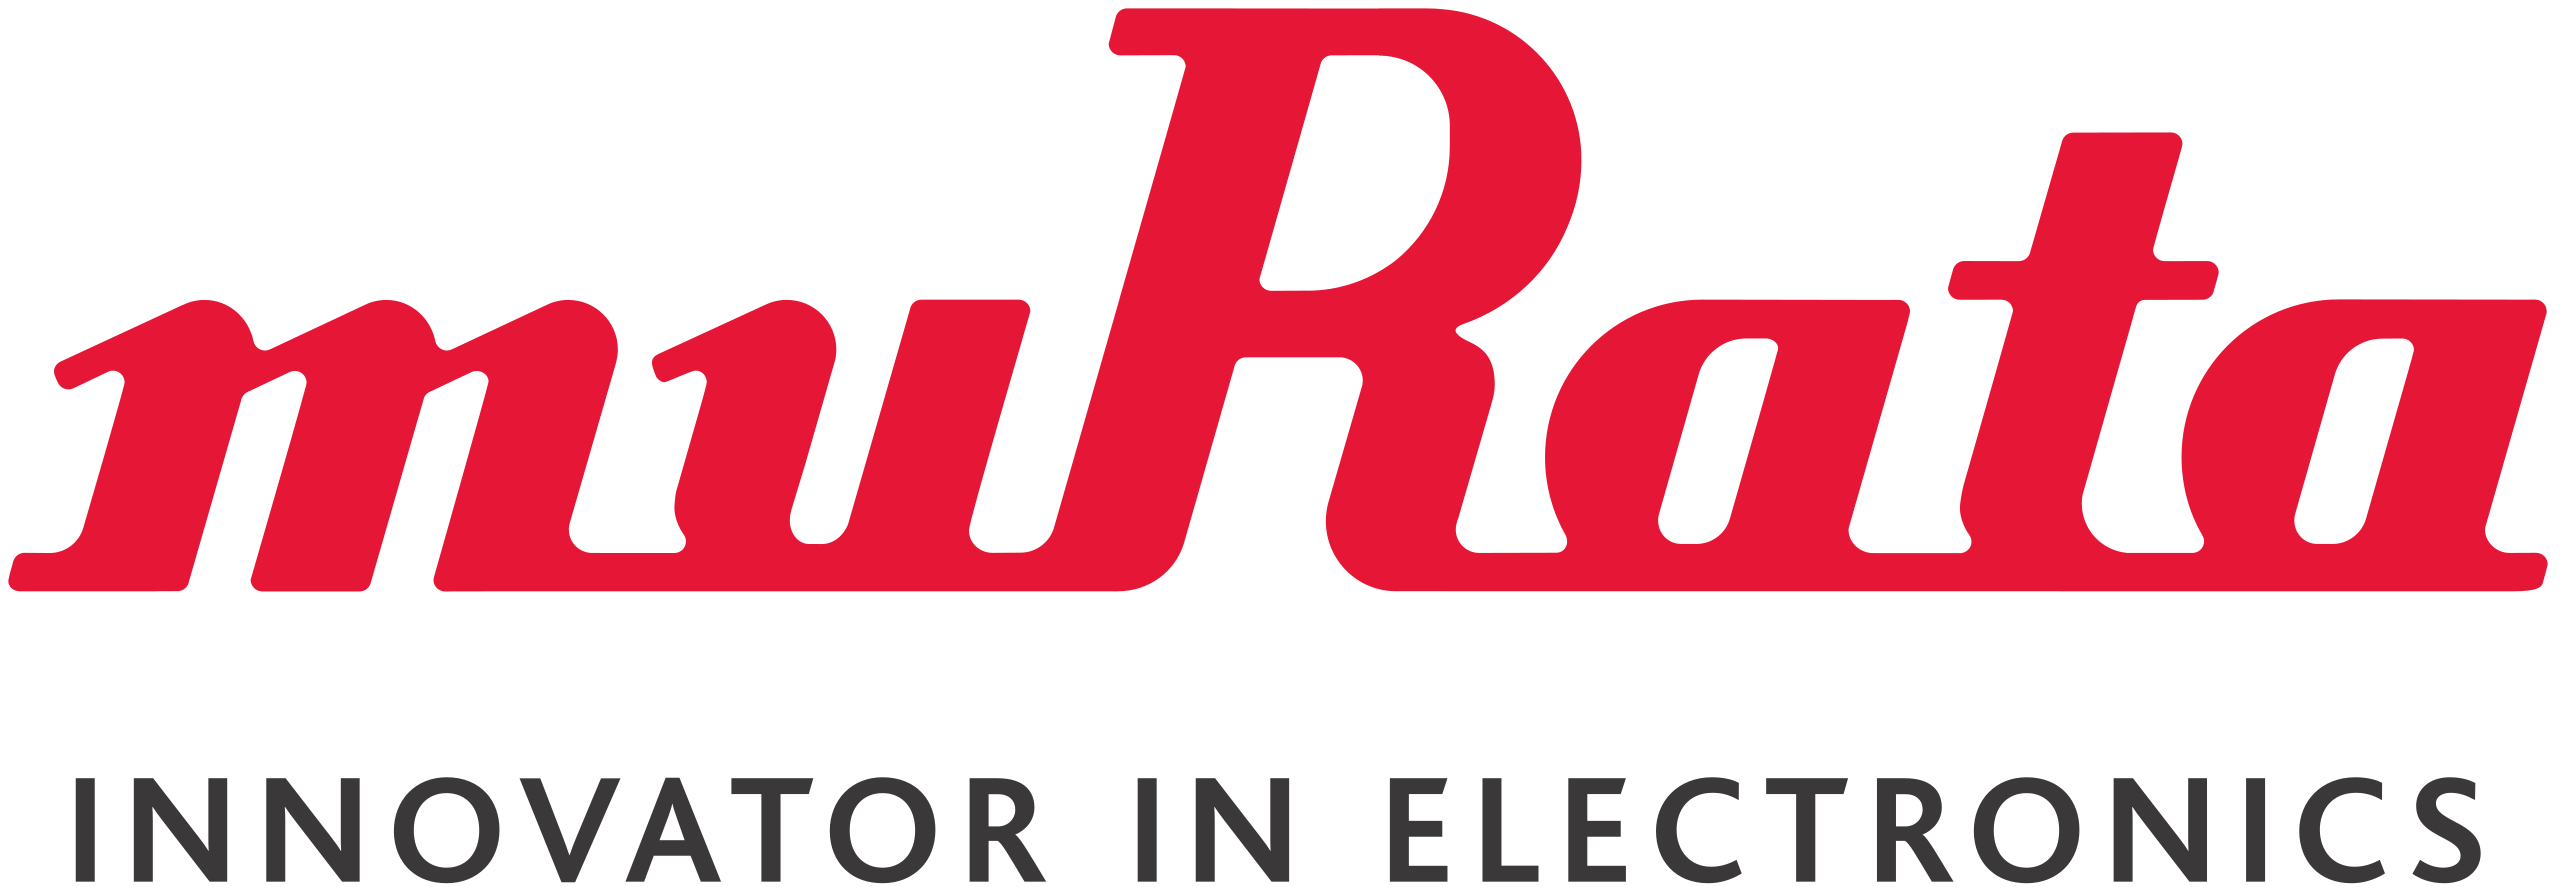 Murata Manufacturing Co Ltd logo